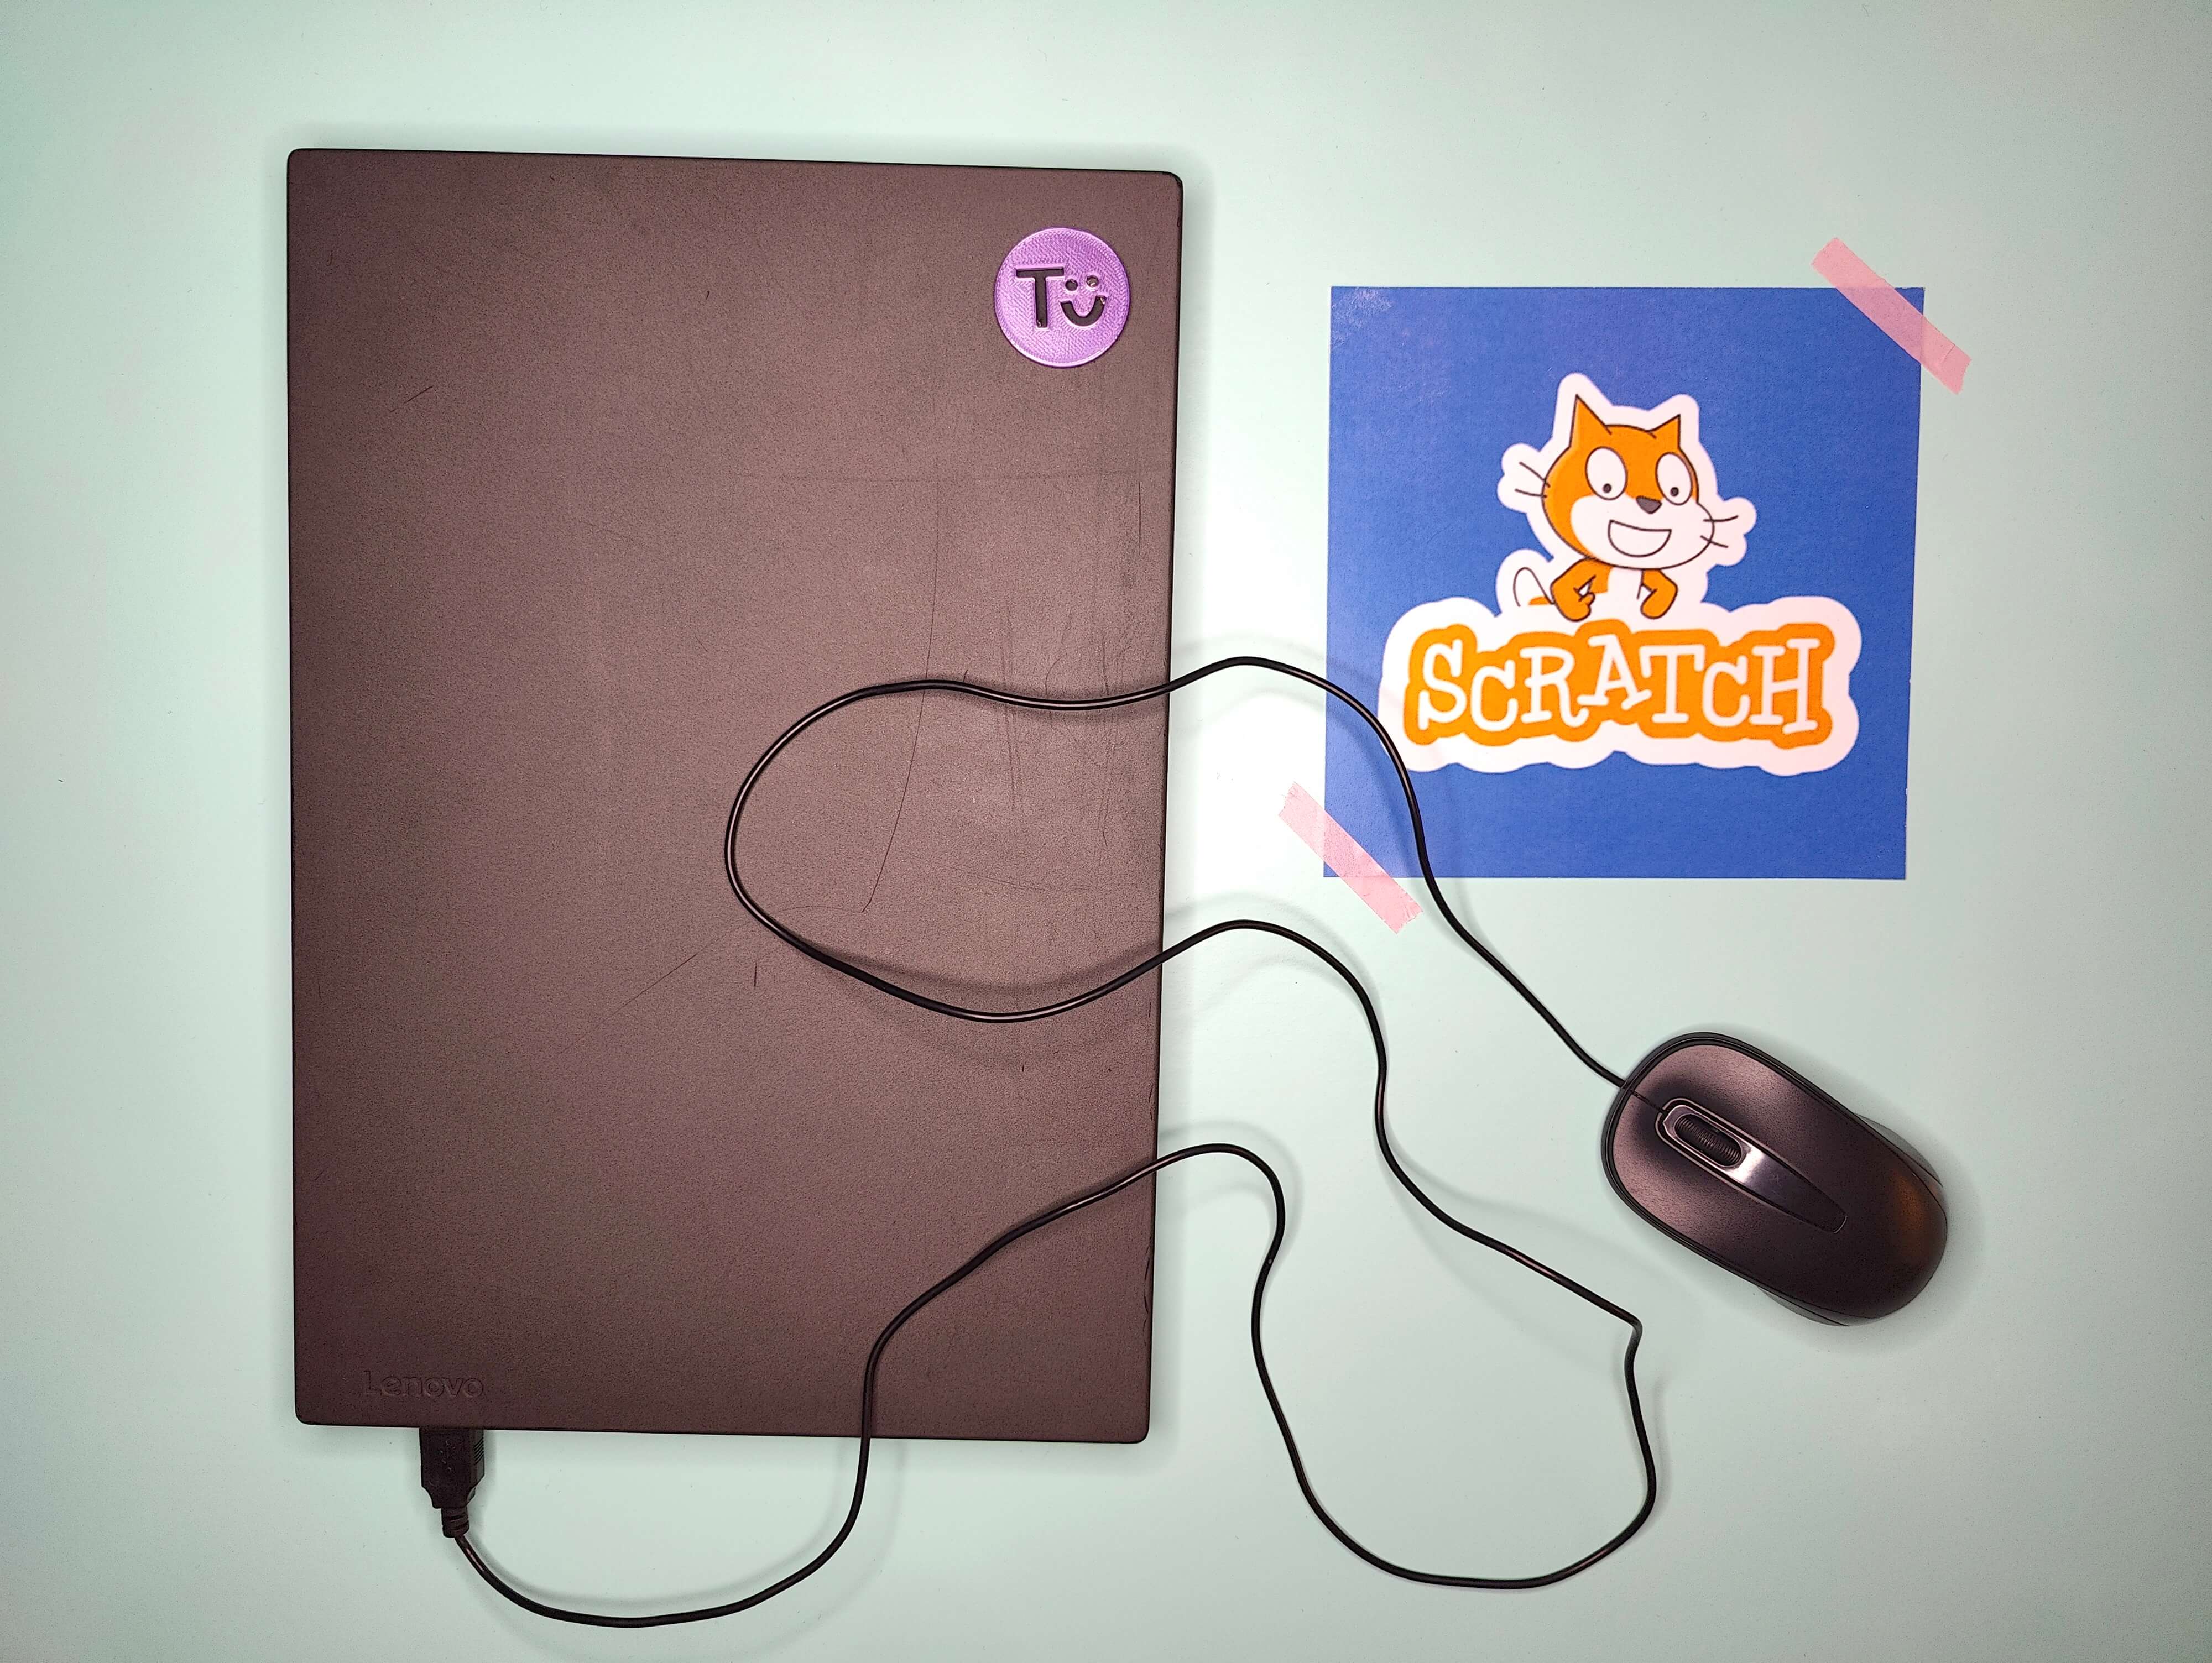 Laptop mit Maus, Bild vom Scratch-Logo